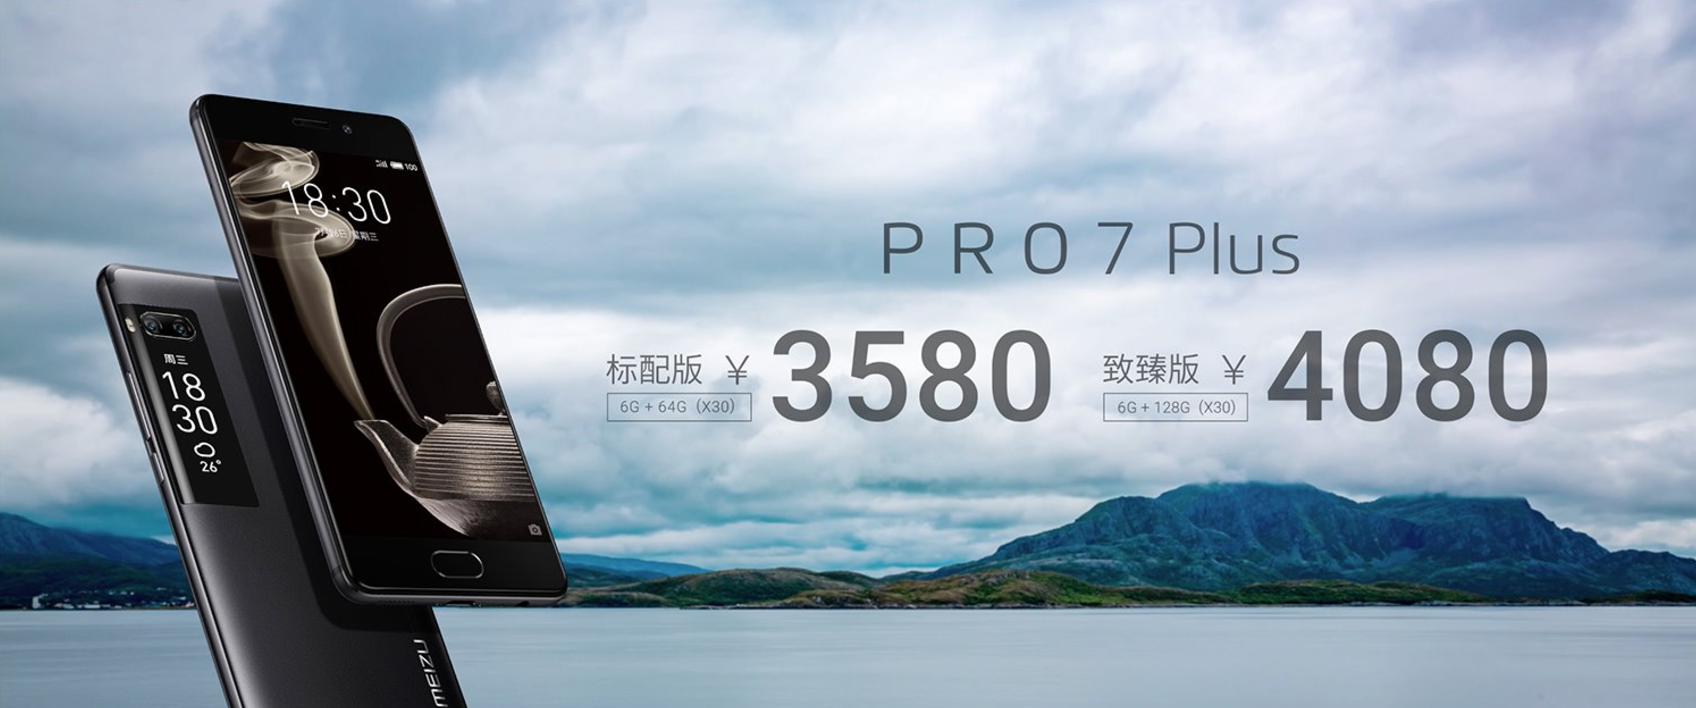 เปิดตัว Meizu Pro 7 และ Pro 7 Plus มาพร้อมจอ Super AMOLED หน้าหลัง กล้องคู่จาก Sony และใช้ CPU Helio X30